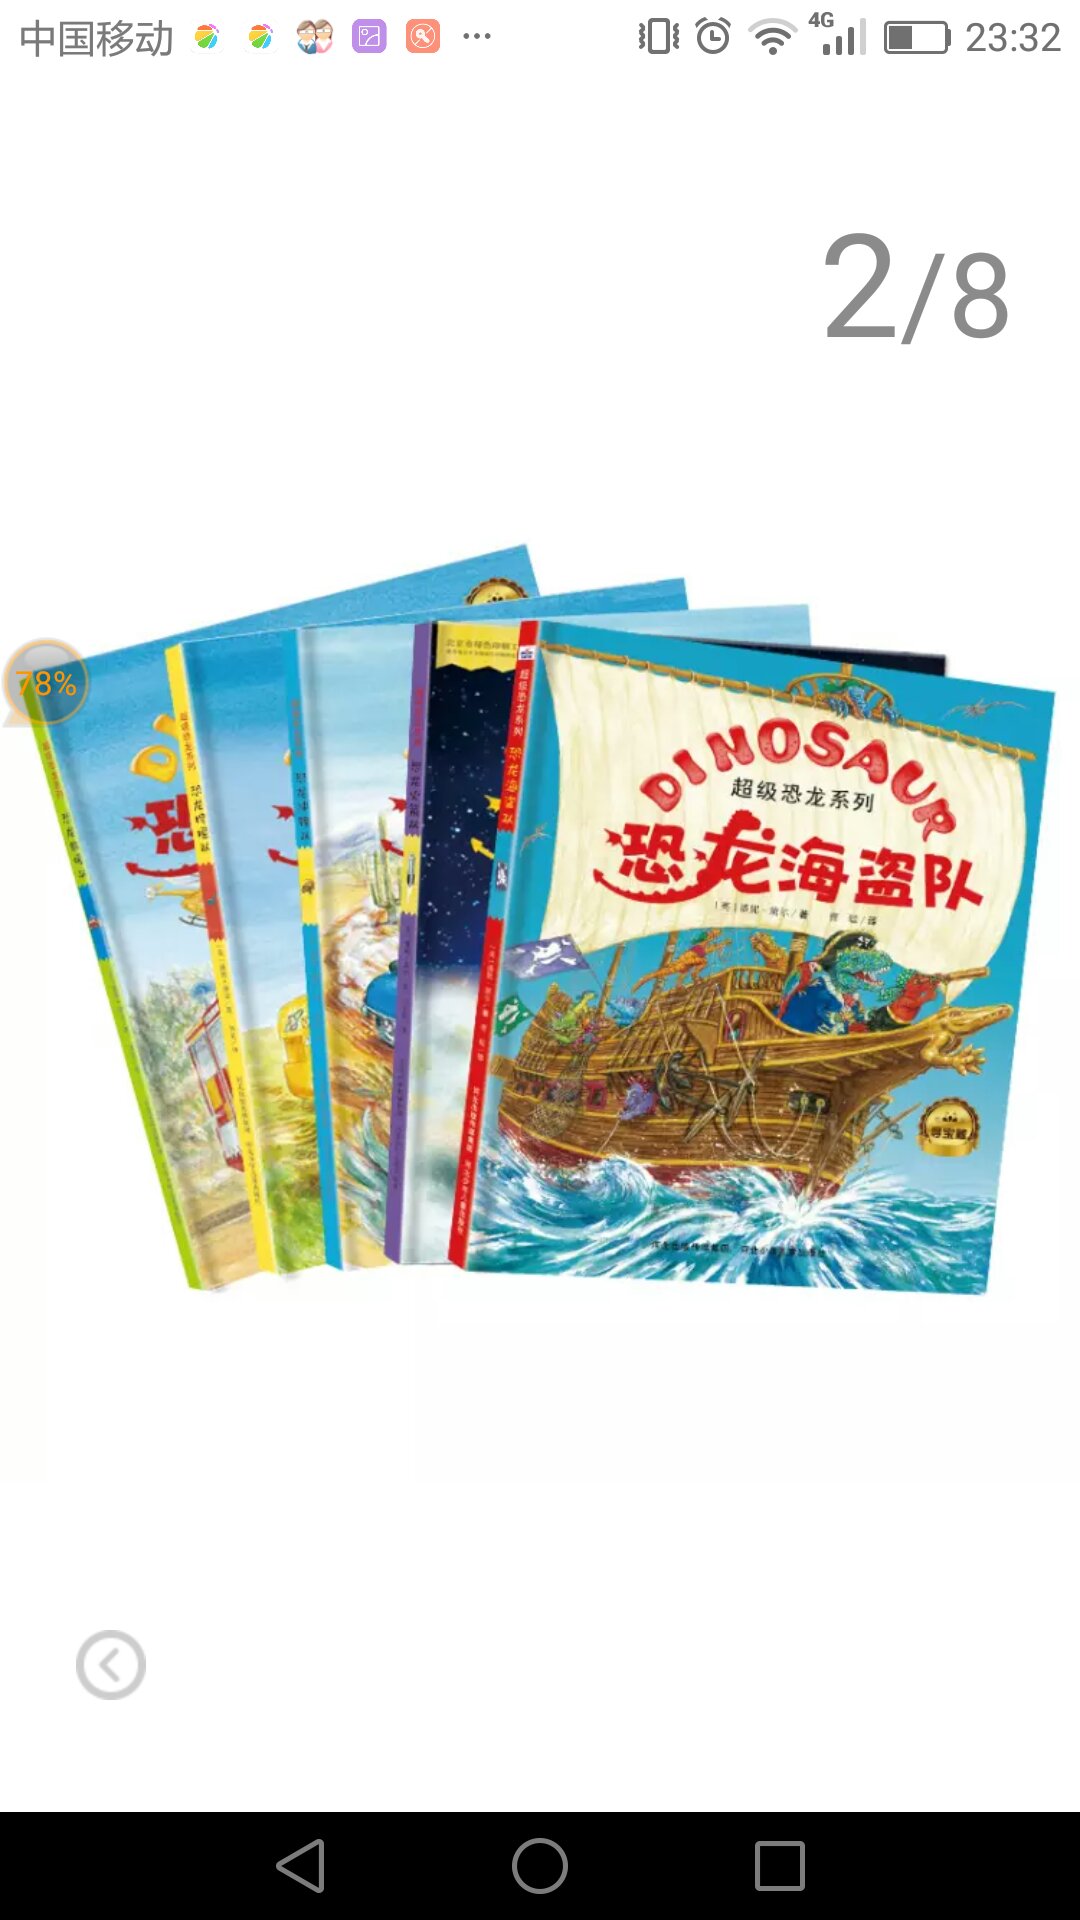 三岁小恐龙迷超喜欢这套书，还带到幼儿园跟小朋友分享